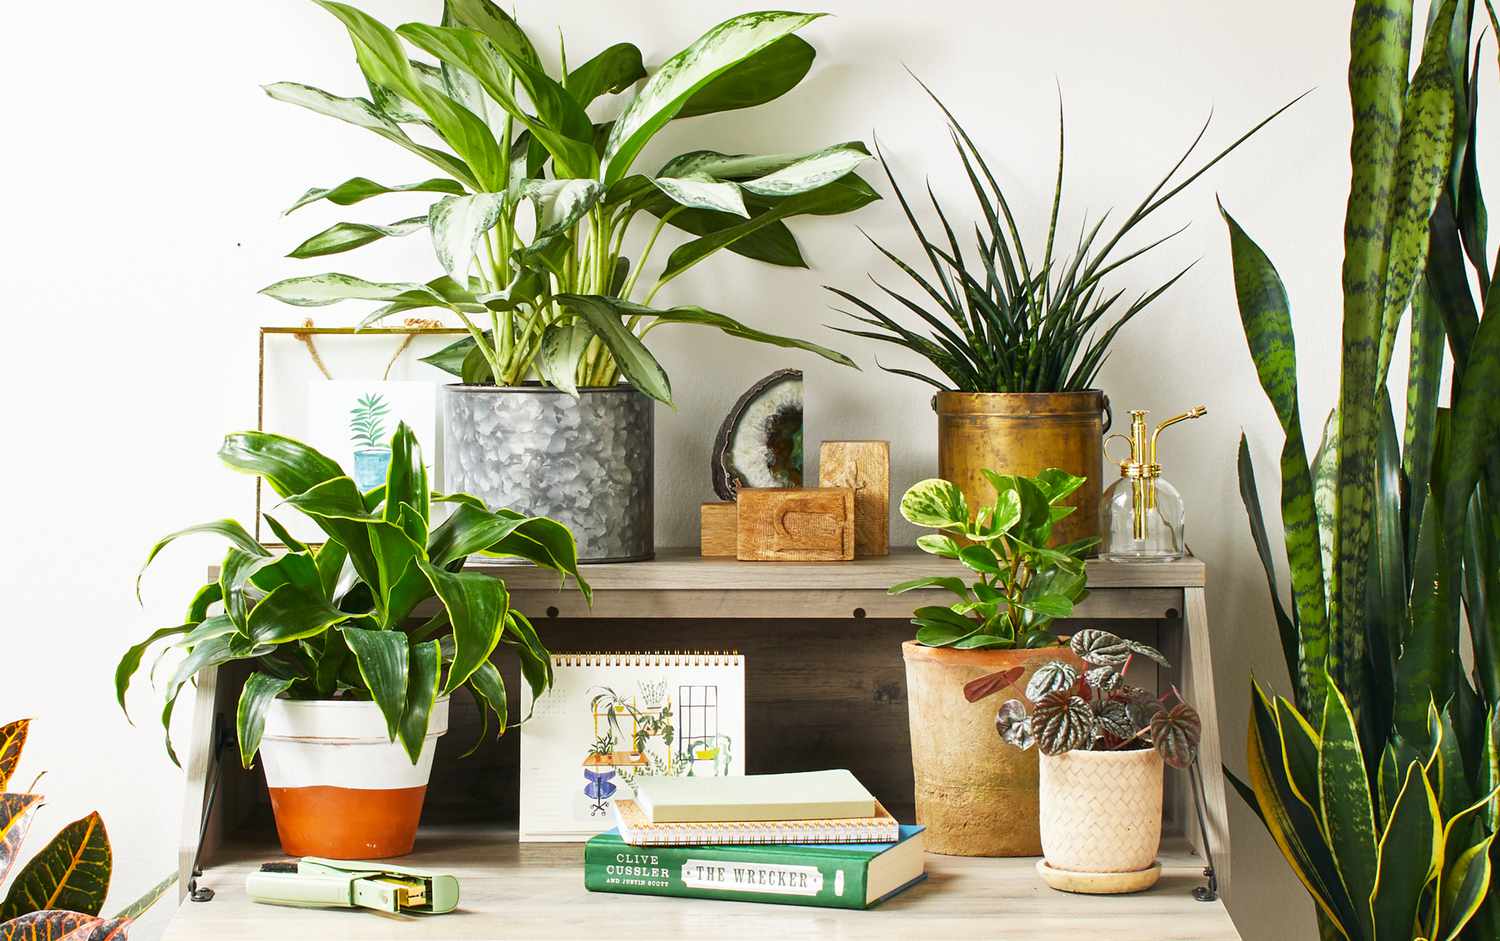 10 Pieces Cute Plastic Plants Pots for Succulent Cactus 5 Colors Home Flowerpot 